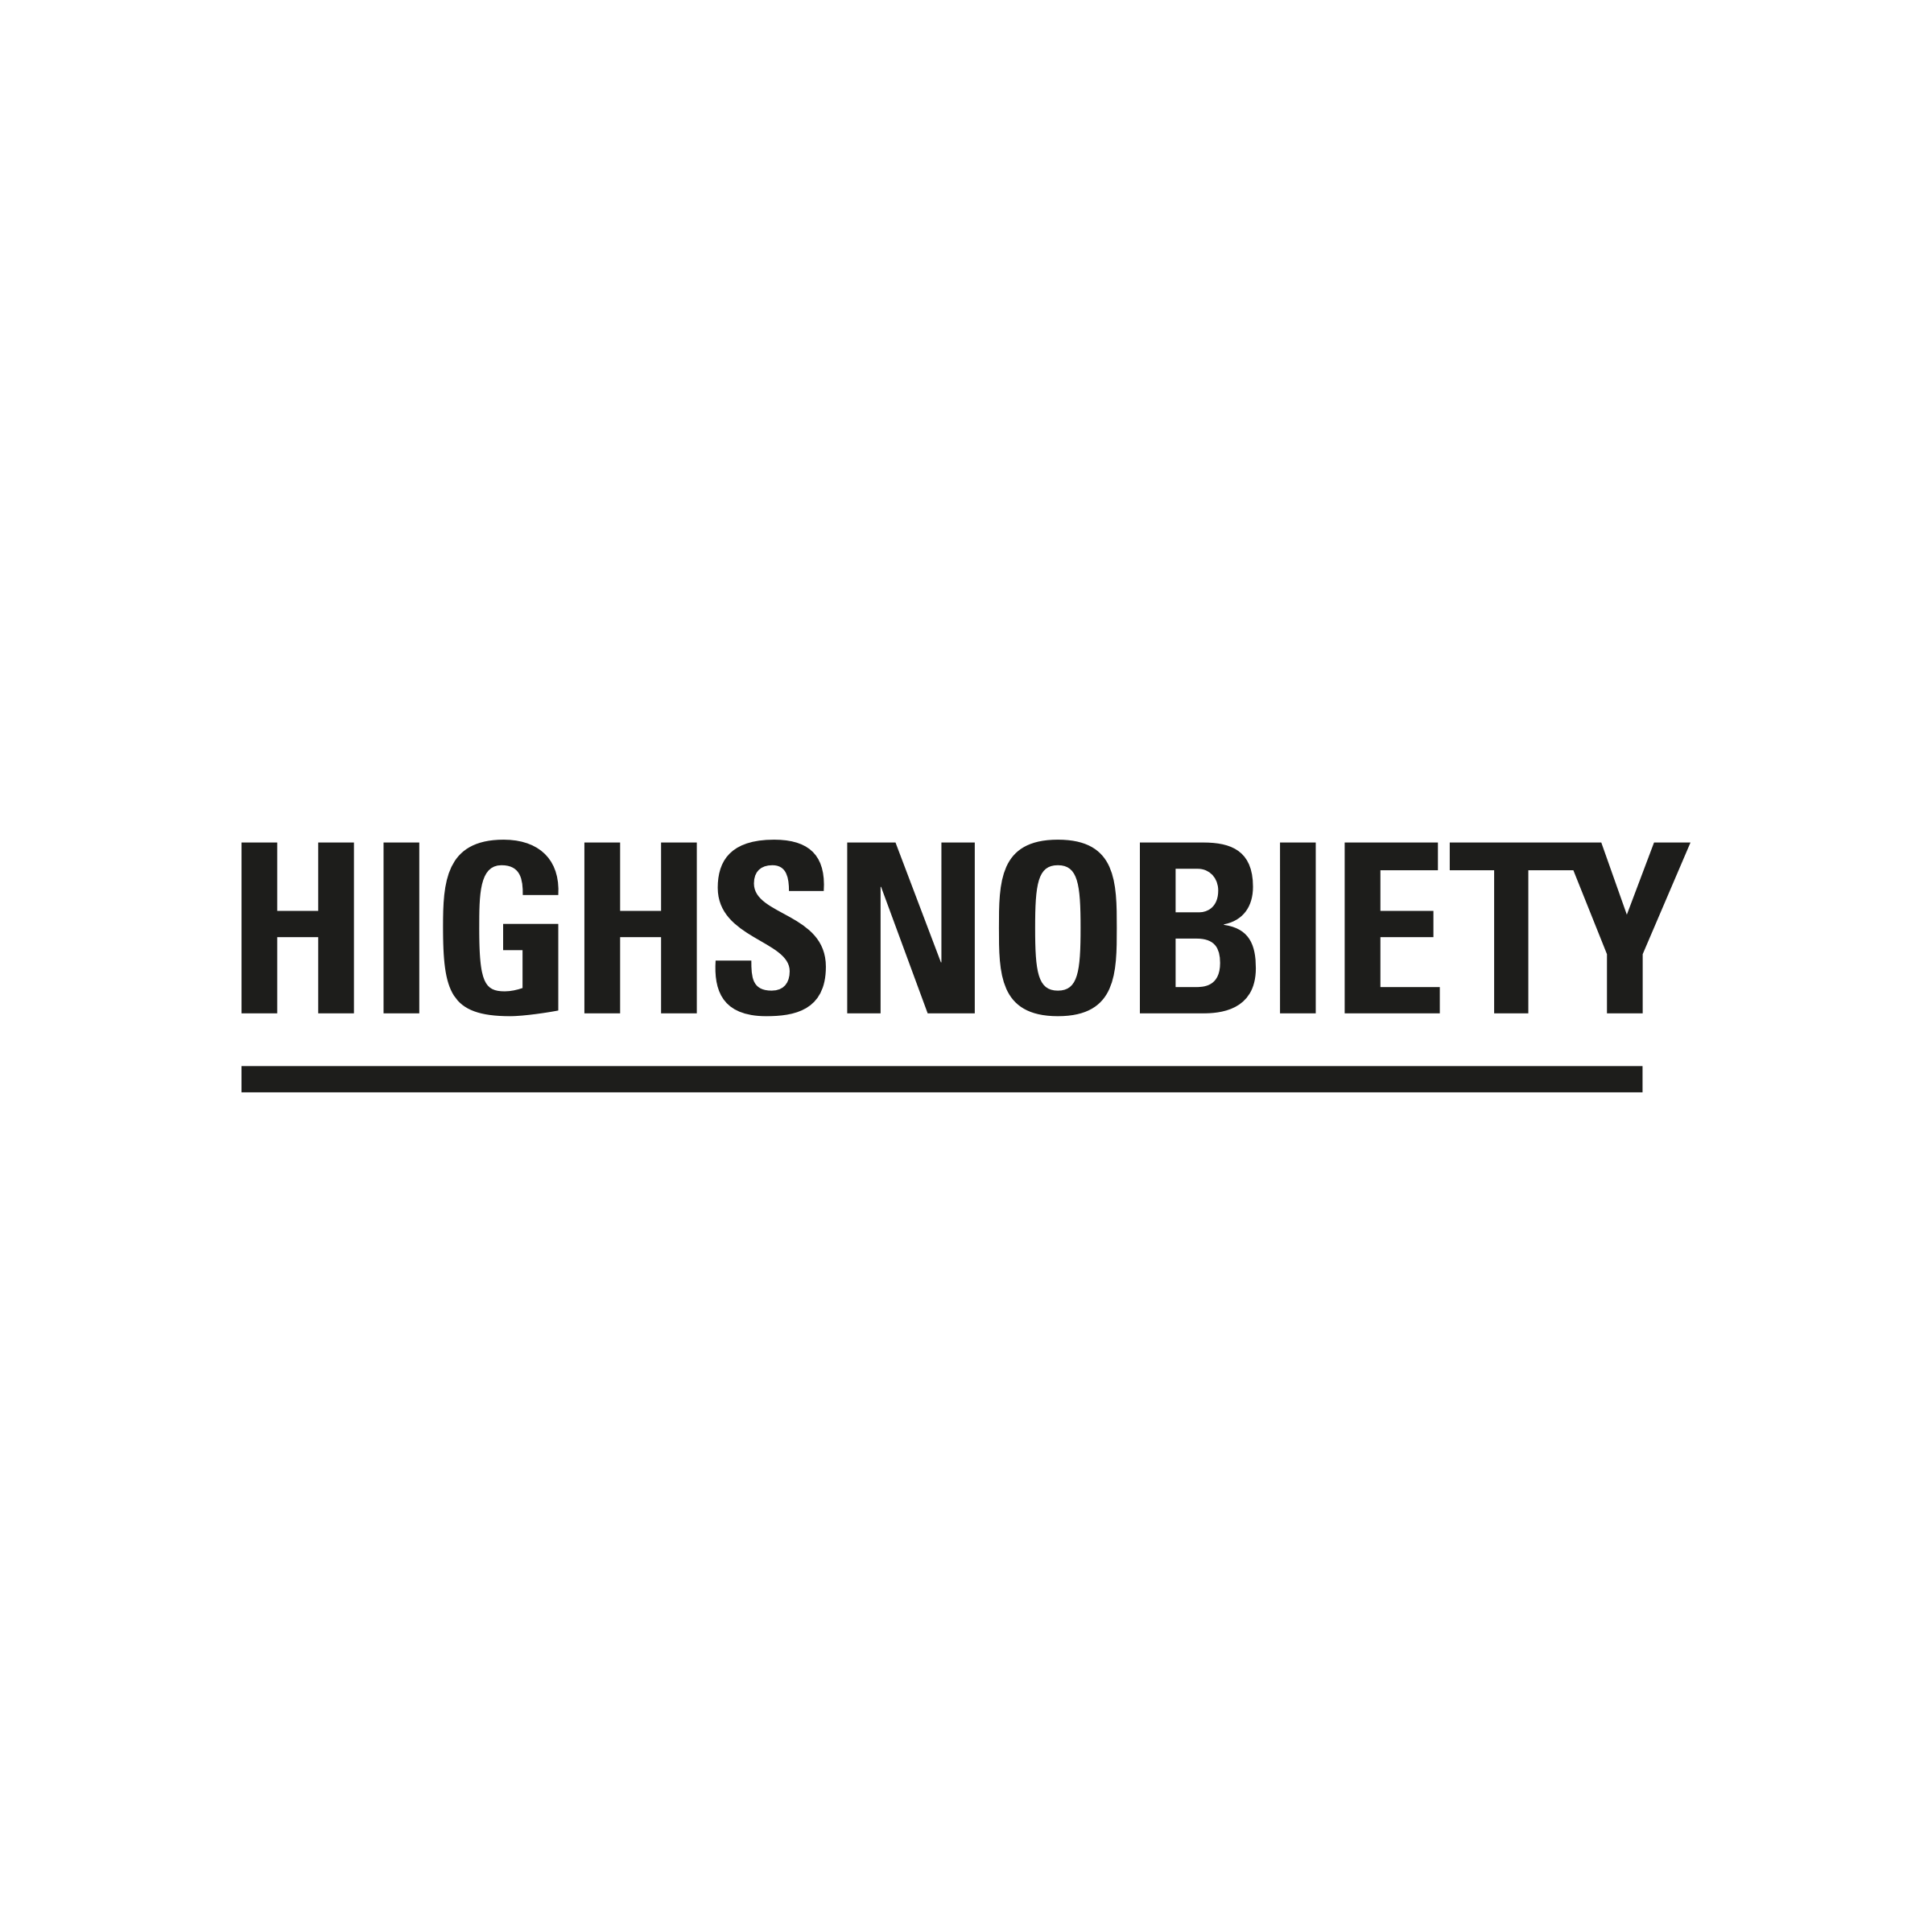 www.highsnobiety.com